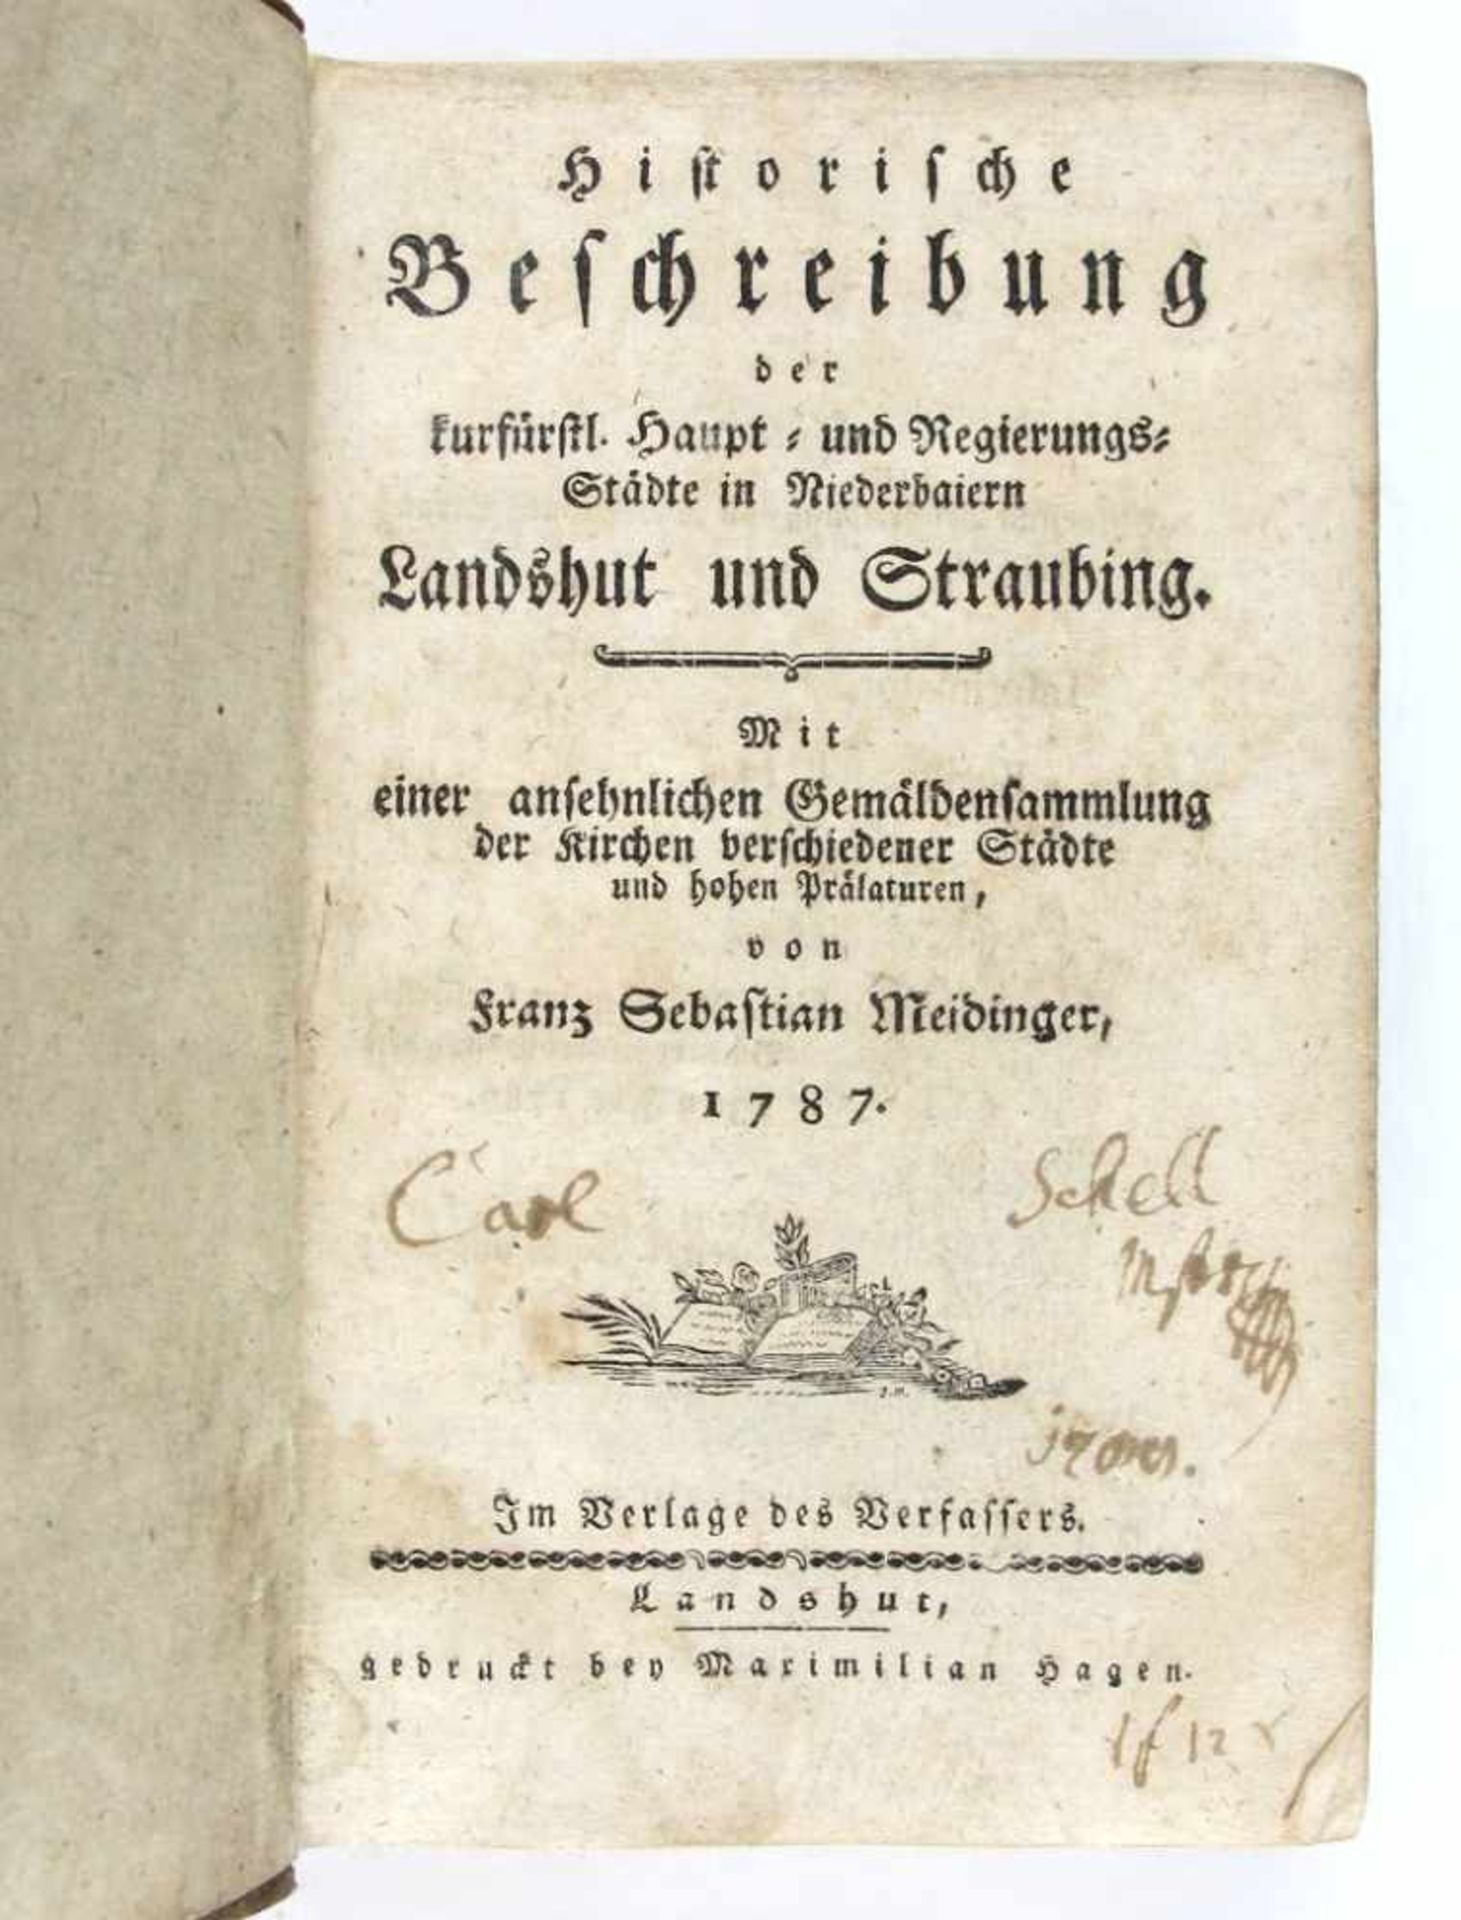 Bayern: Meidinger, Franz Sebastian. Historische Beschreibung der kurfürstl. Haupt- und Regierungs-